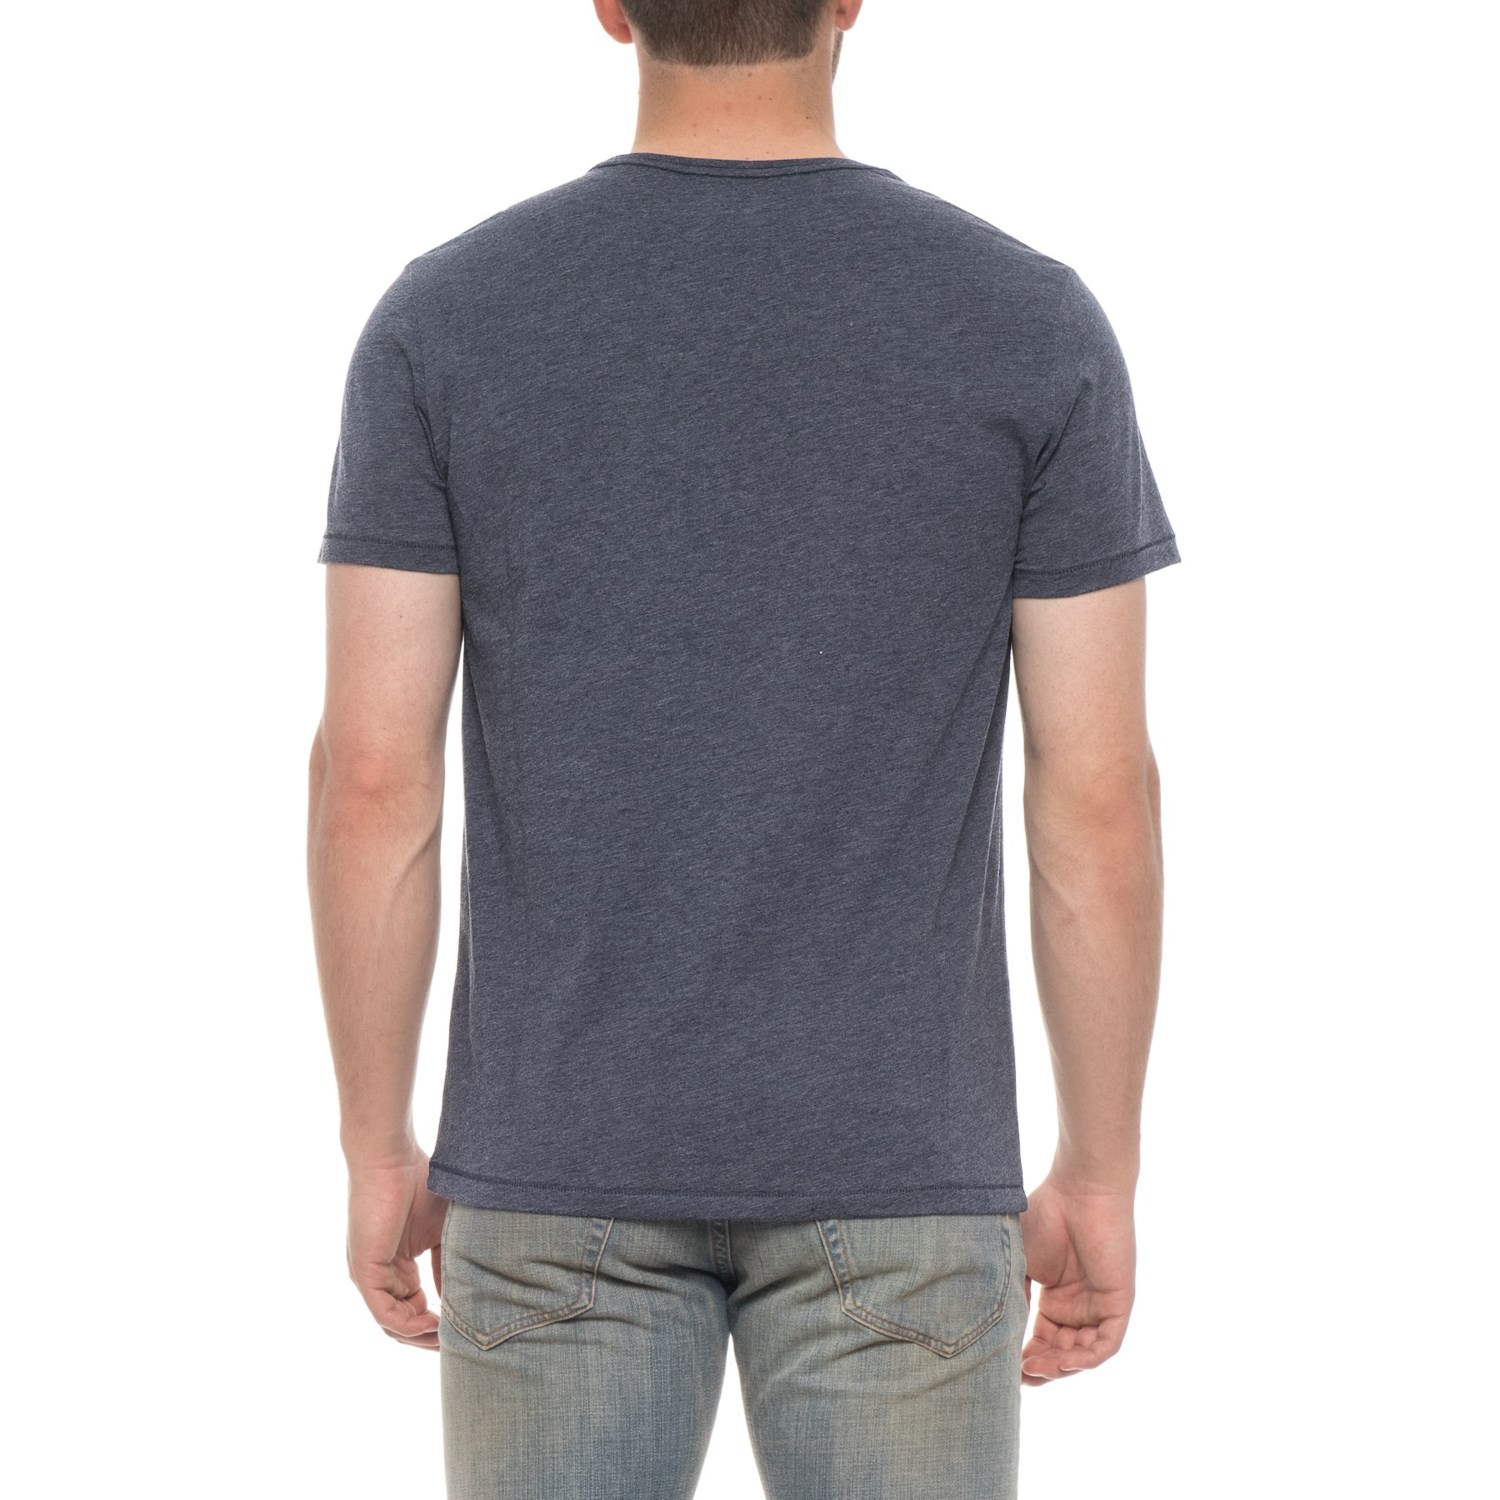 Isaac Mizrahi Heathered Crew Neck Shirt (For Men) - Save 66%